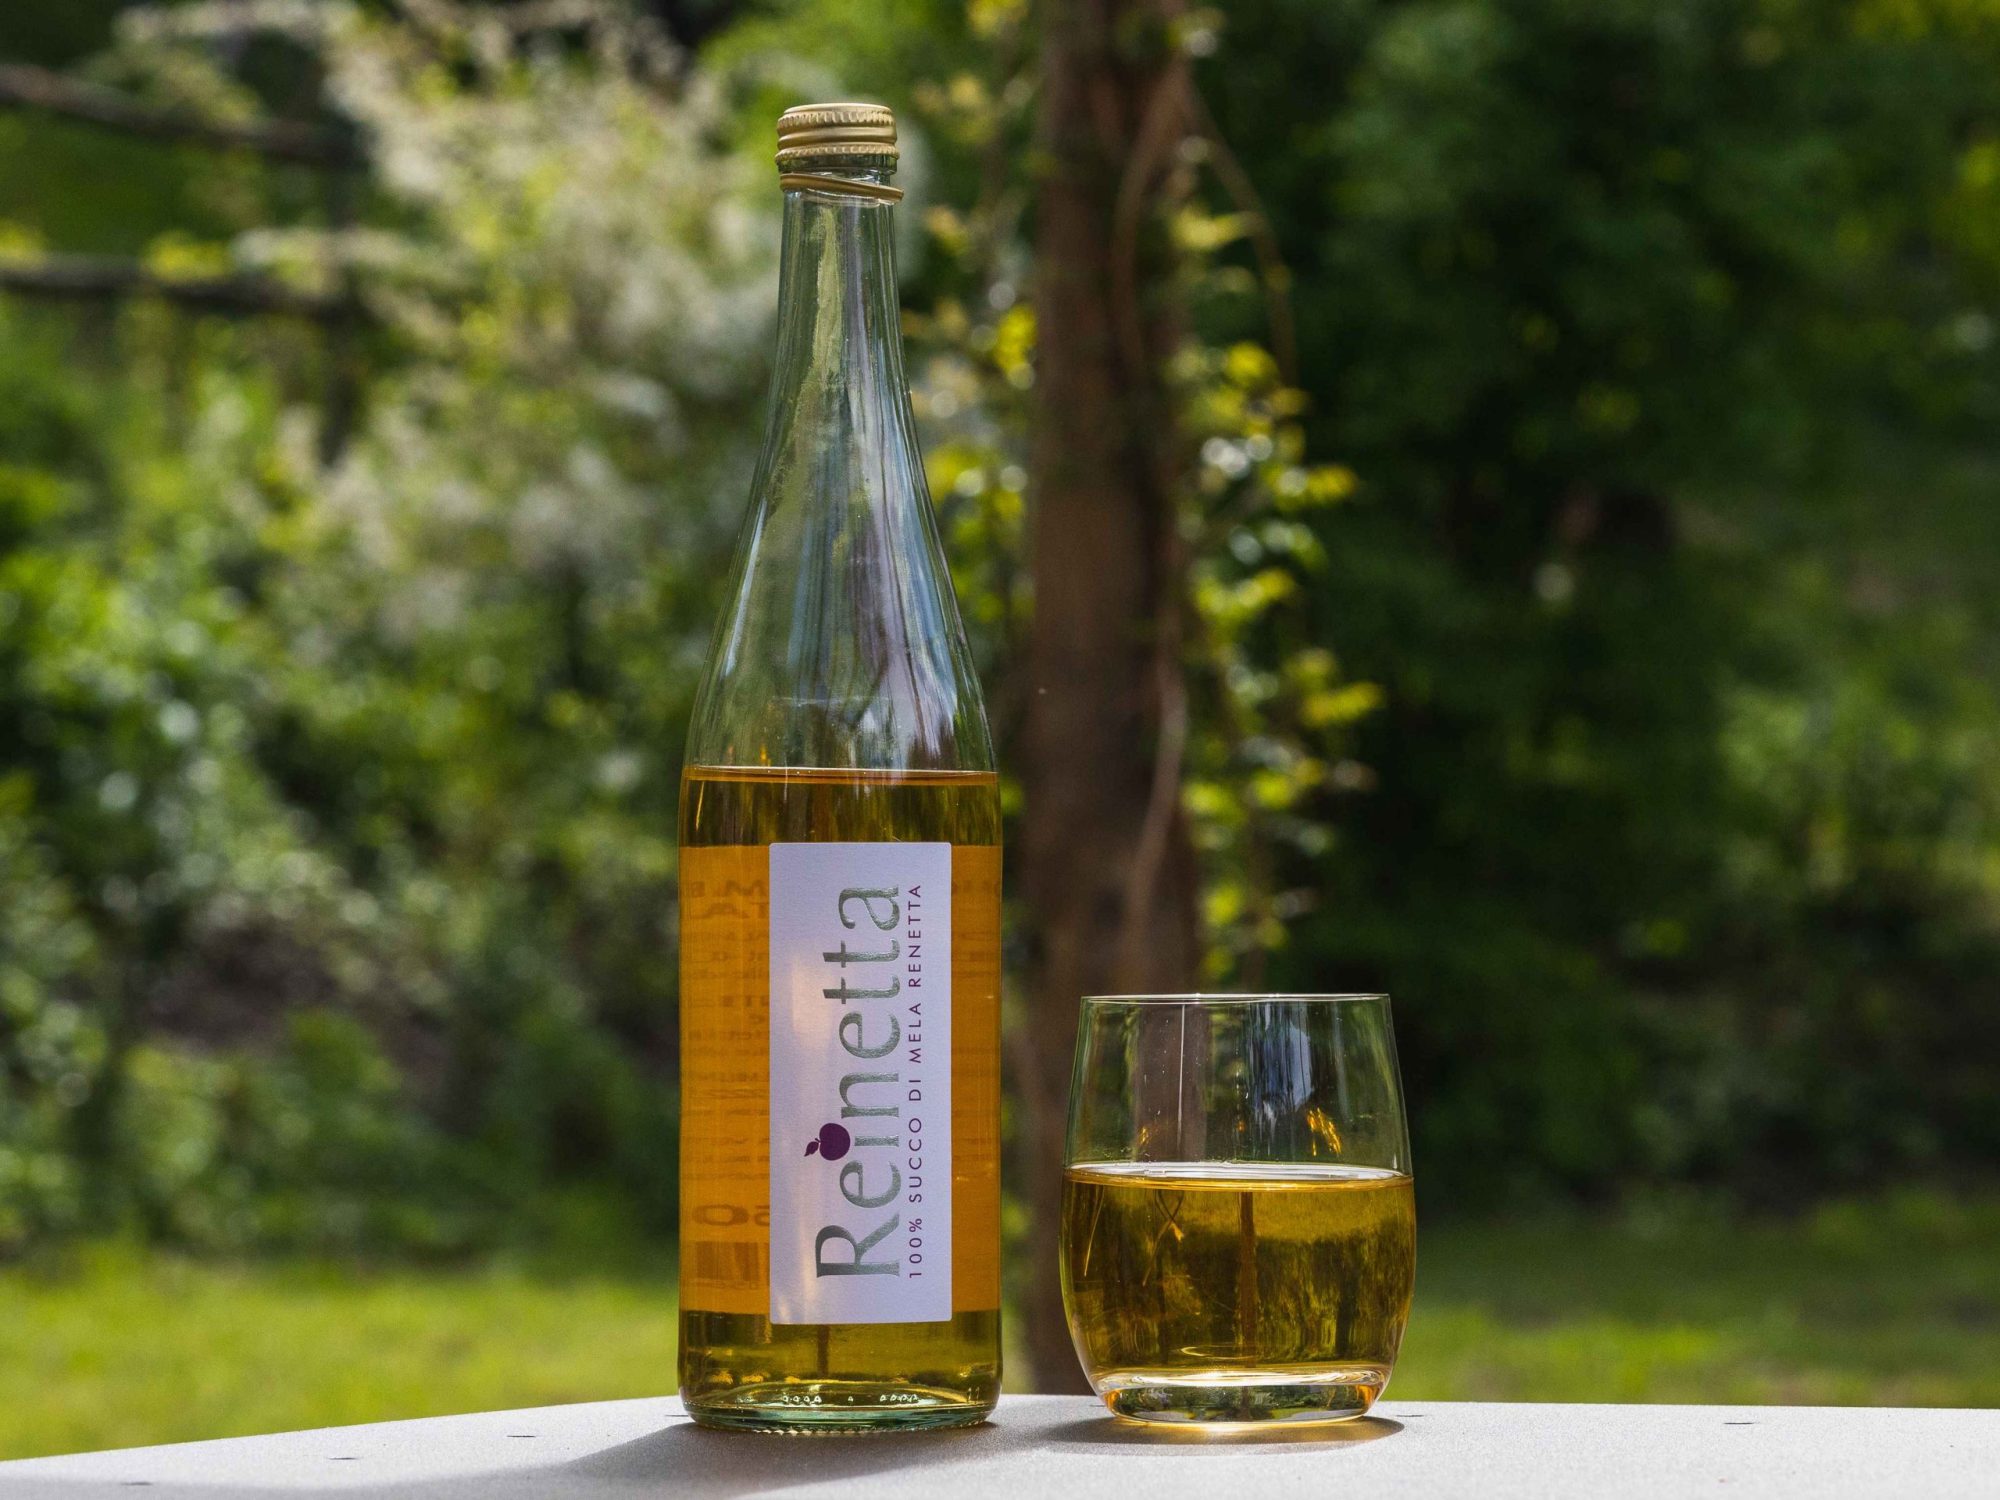 Succo di mela Reinetta Valle d'Aosta - Saint Grat - Tascapan bottiglia e bicchiere